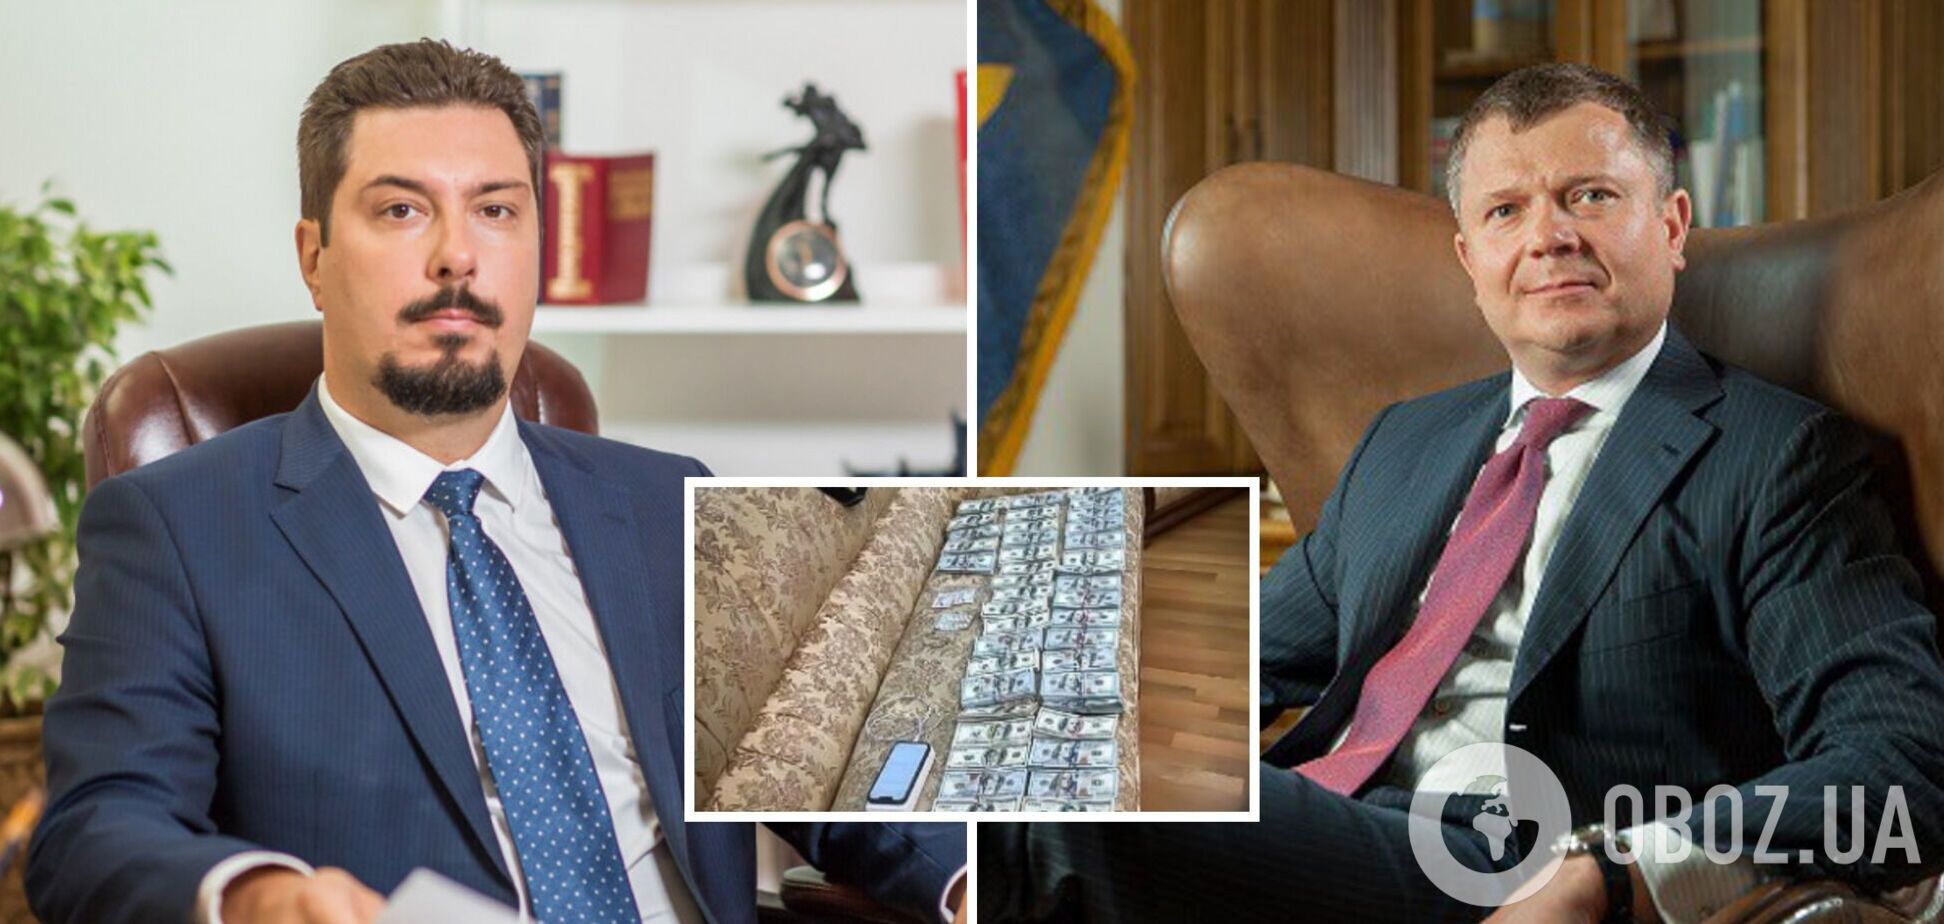 Пойманный на взятке в $3 млн председатель Верховного суда получал деньги за решение в пользу Жеваго – СМИ